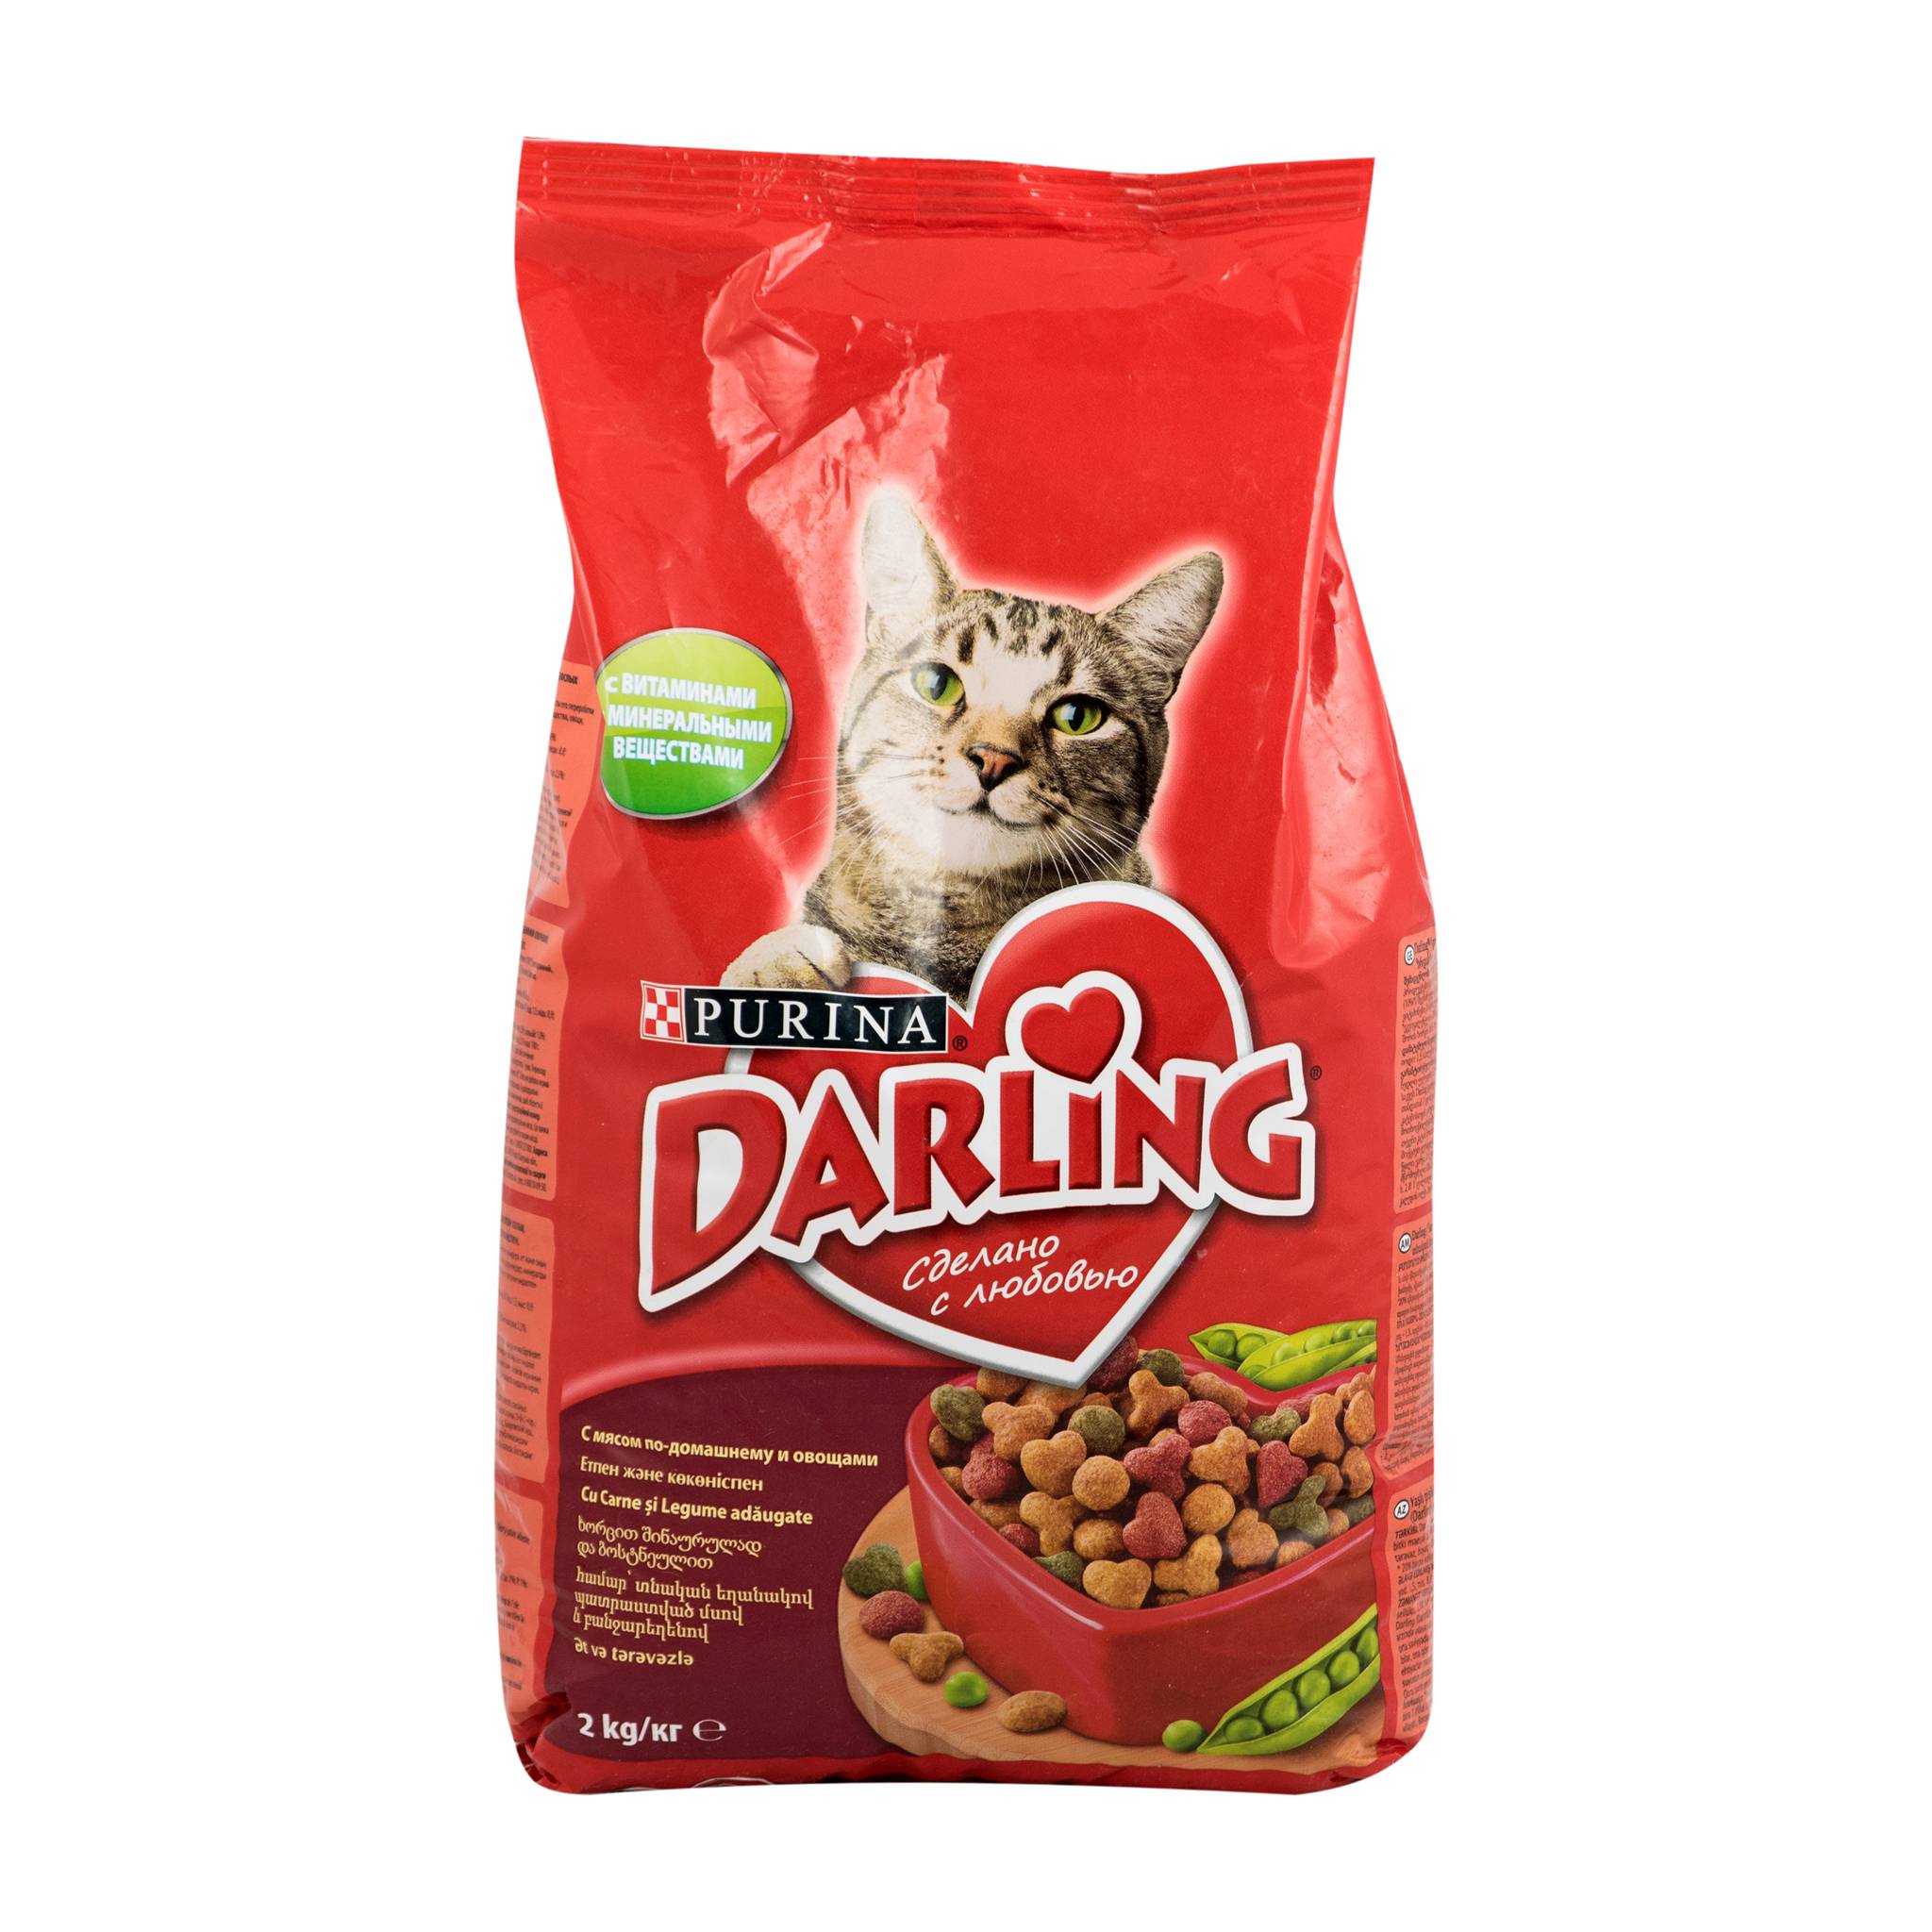 Дарлинг - корм для собак: отзывы, цена, состав, сухой